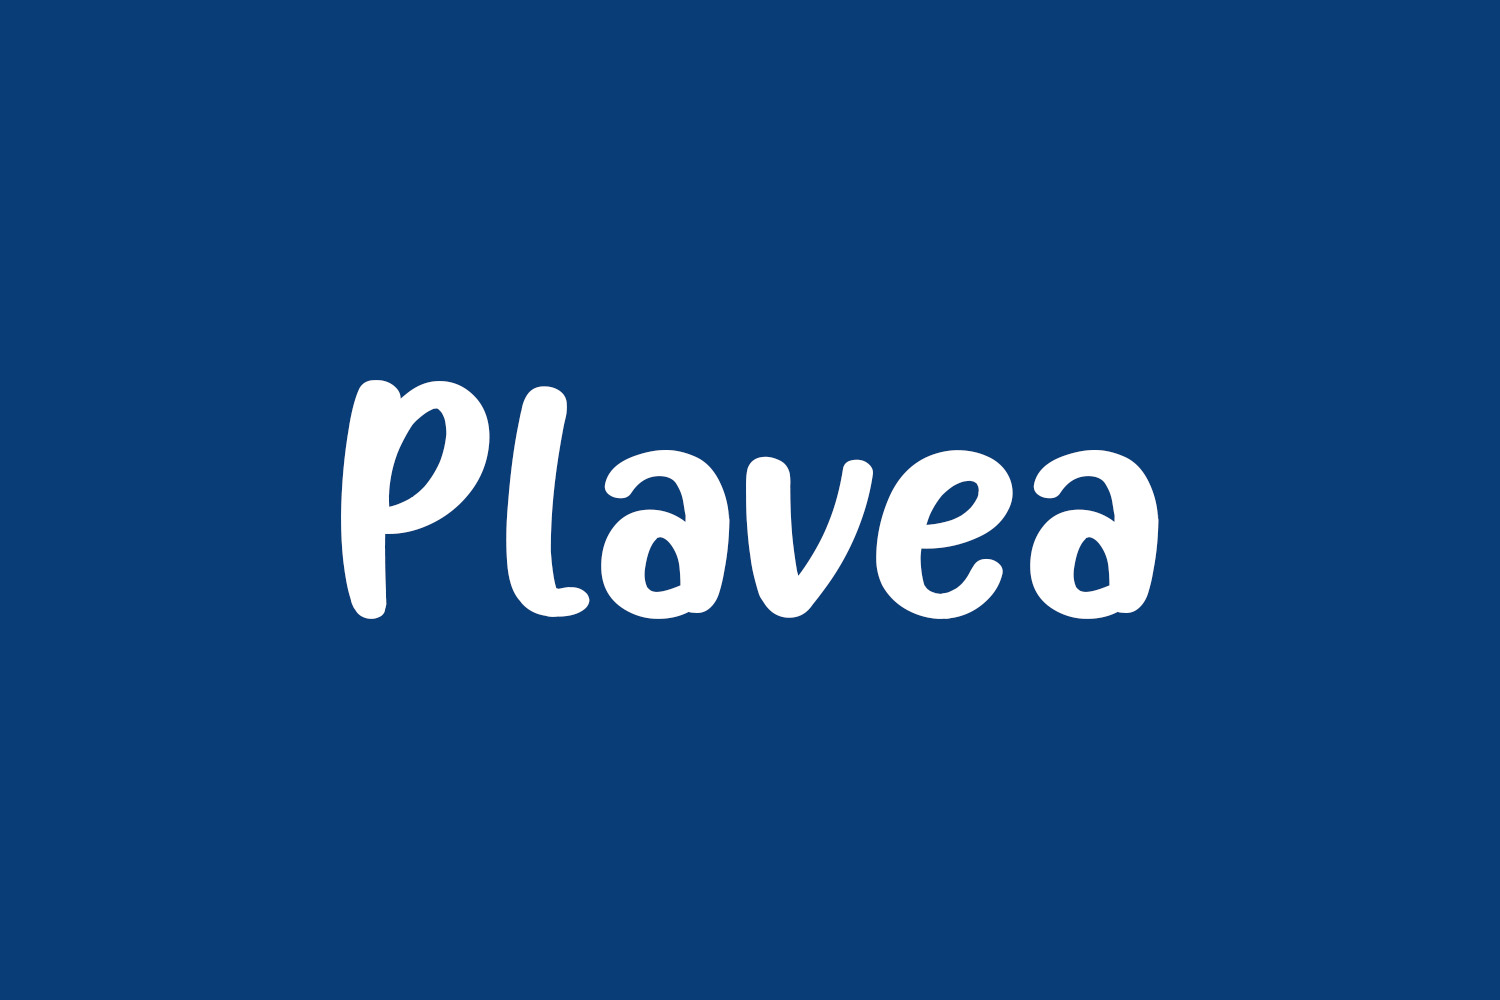 Plavea Free Font